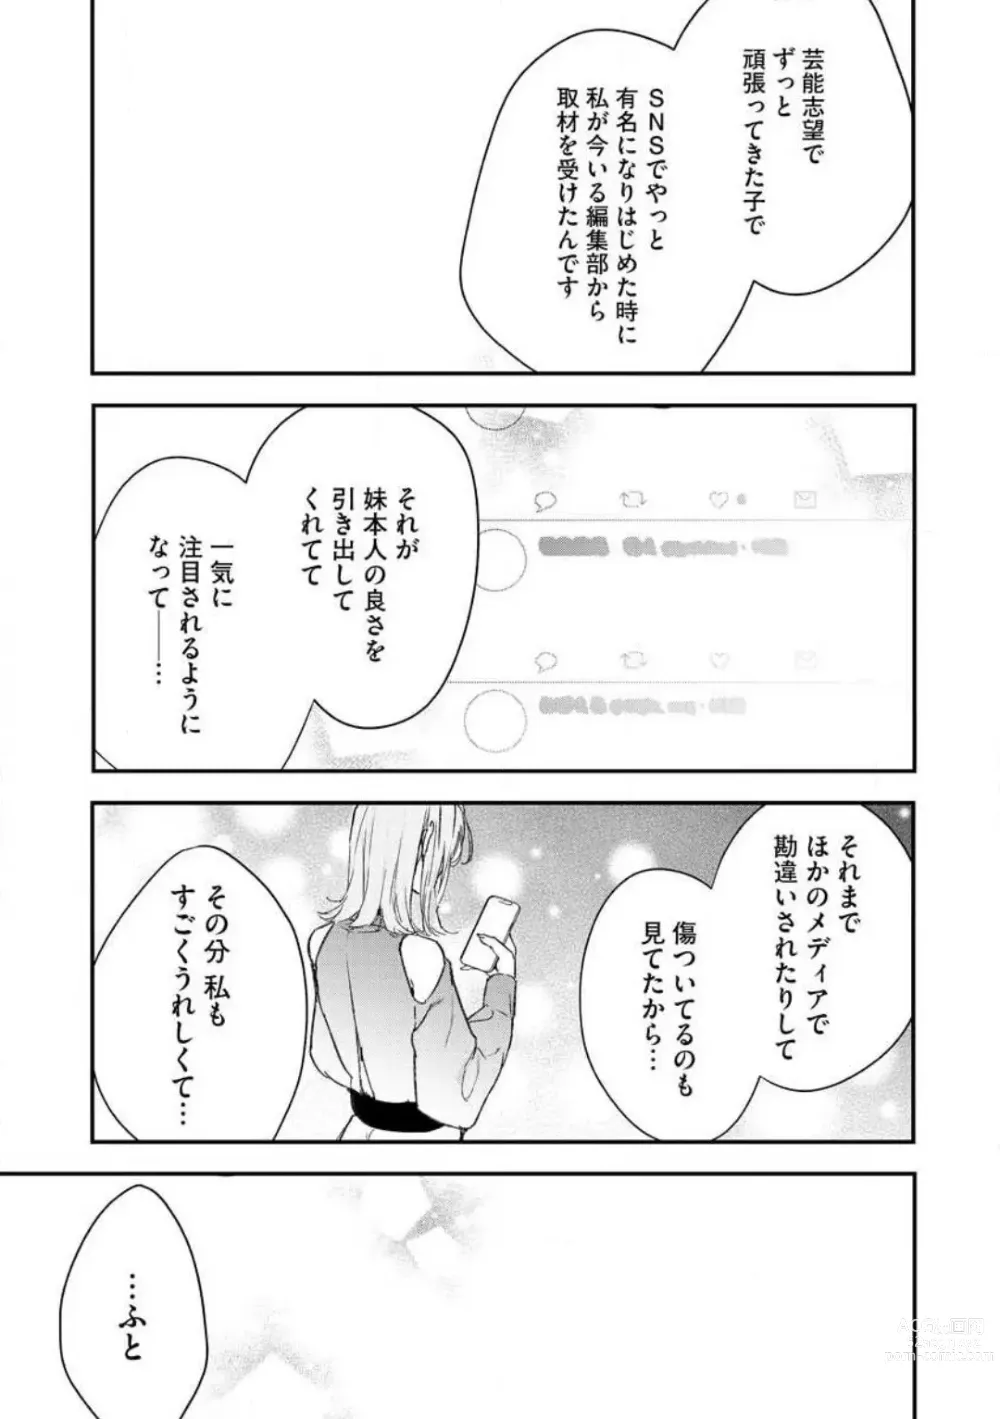 Page 233 of manga Inukai-san wa Kakure Dekiai Joushi - Konya Dake wa Suki